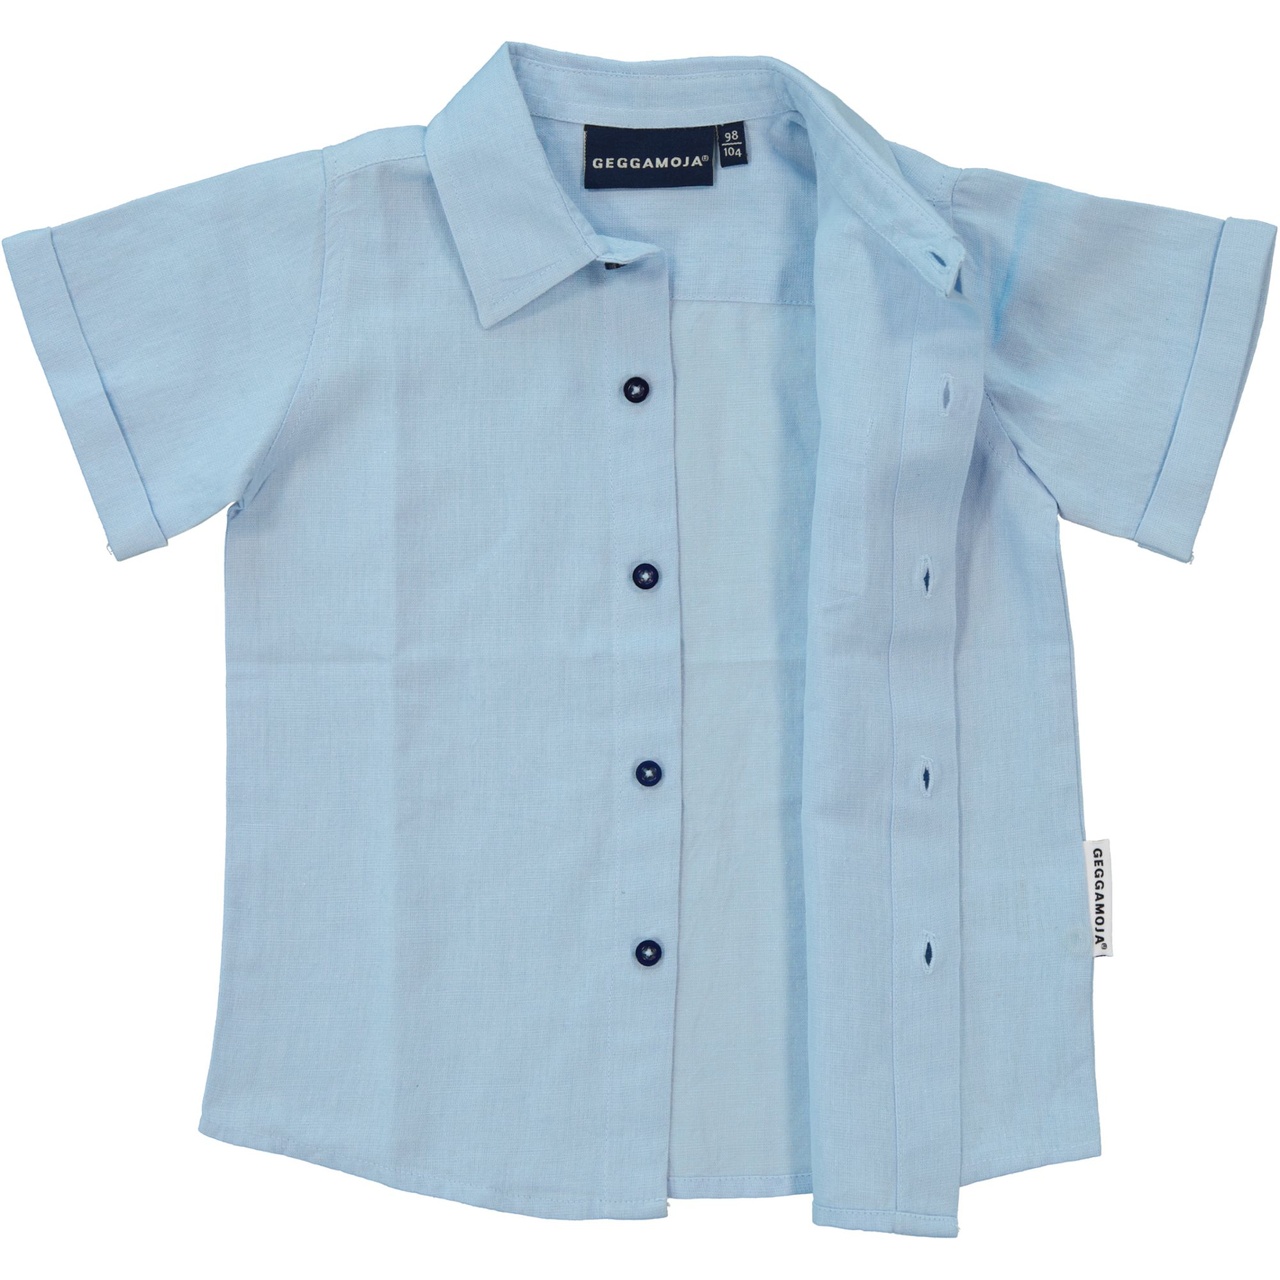 Linnen Shirt S.S Light blue 146/152